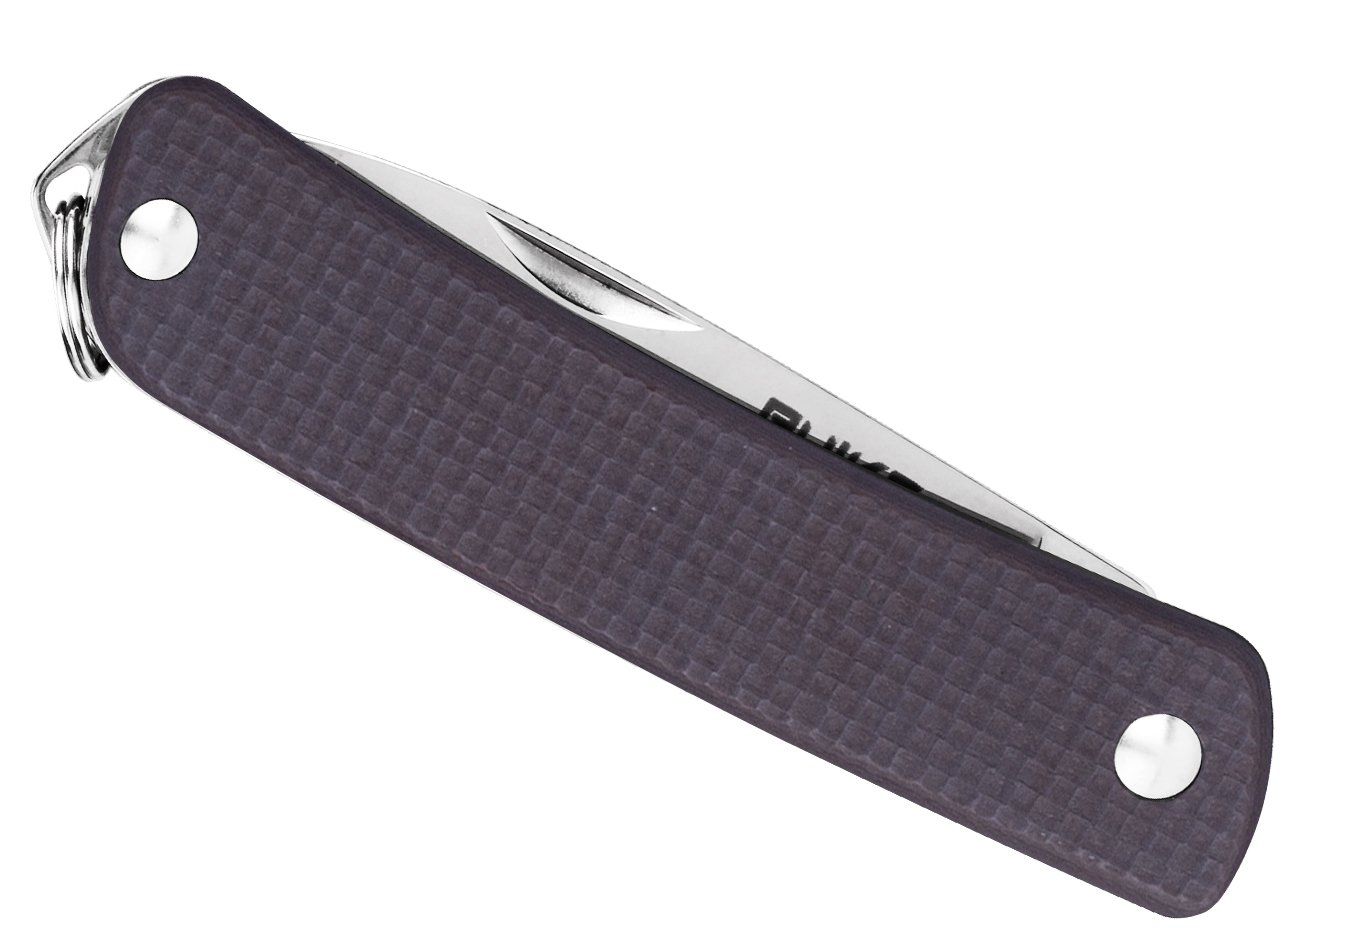 Produktbild von Ruike S11-N braun - Taschenmesser, Sandvik 12C27 Edelstahl, 2 Funktionen